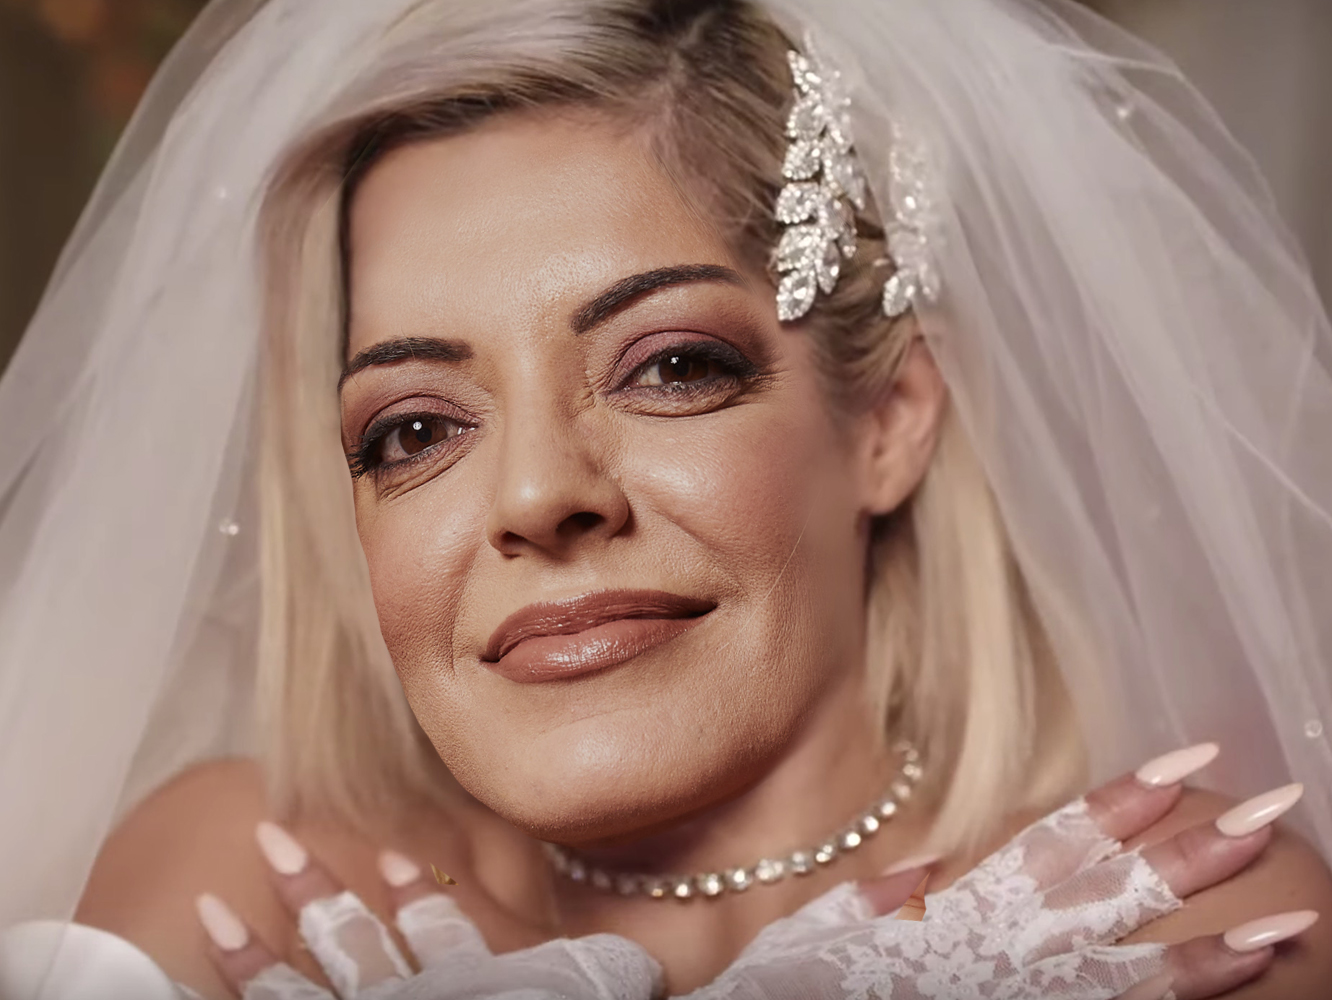  La chica para todo Bebe Rexha se desmadra en una boda a ritmo de Jax Jones en ‘Harder’